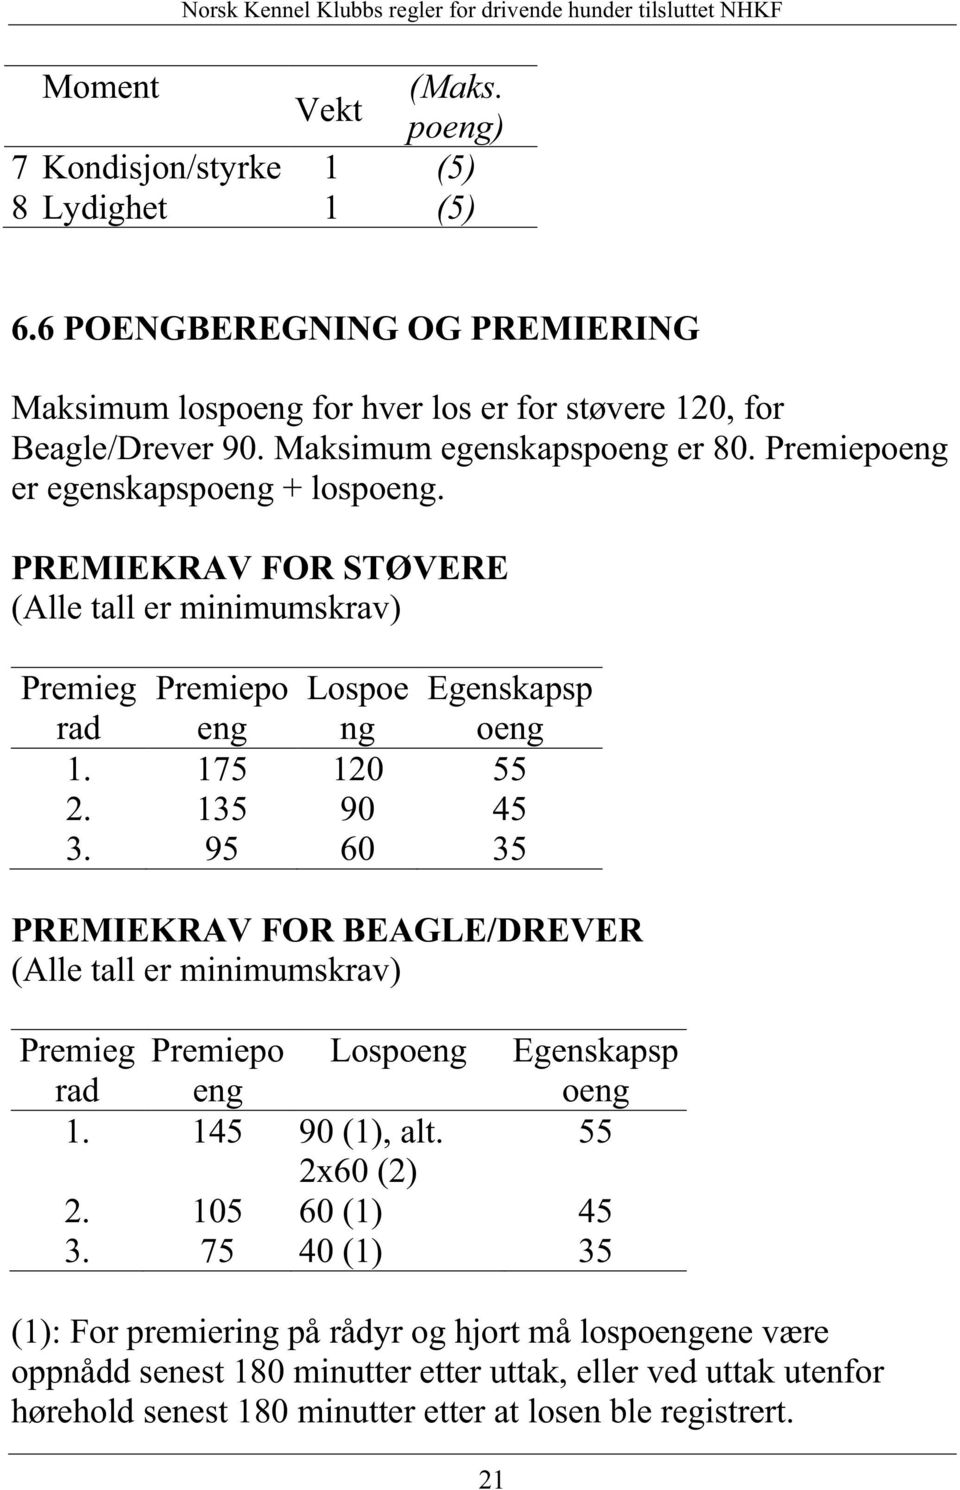 135 90 45 3. 95 60 35 Egenskapsp oeng PREMIEKRAV FOR BEAGLE/DREVER (Alle tall er minimumskrav) Premieg Premiepo Lospoeng Egenskapsp rad eng oeng 1. 145 90 (1), alt. 55 2x60 (2) 2.